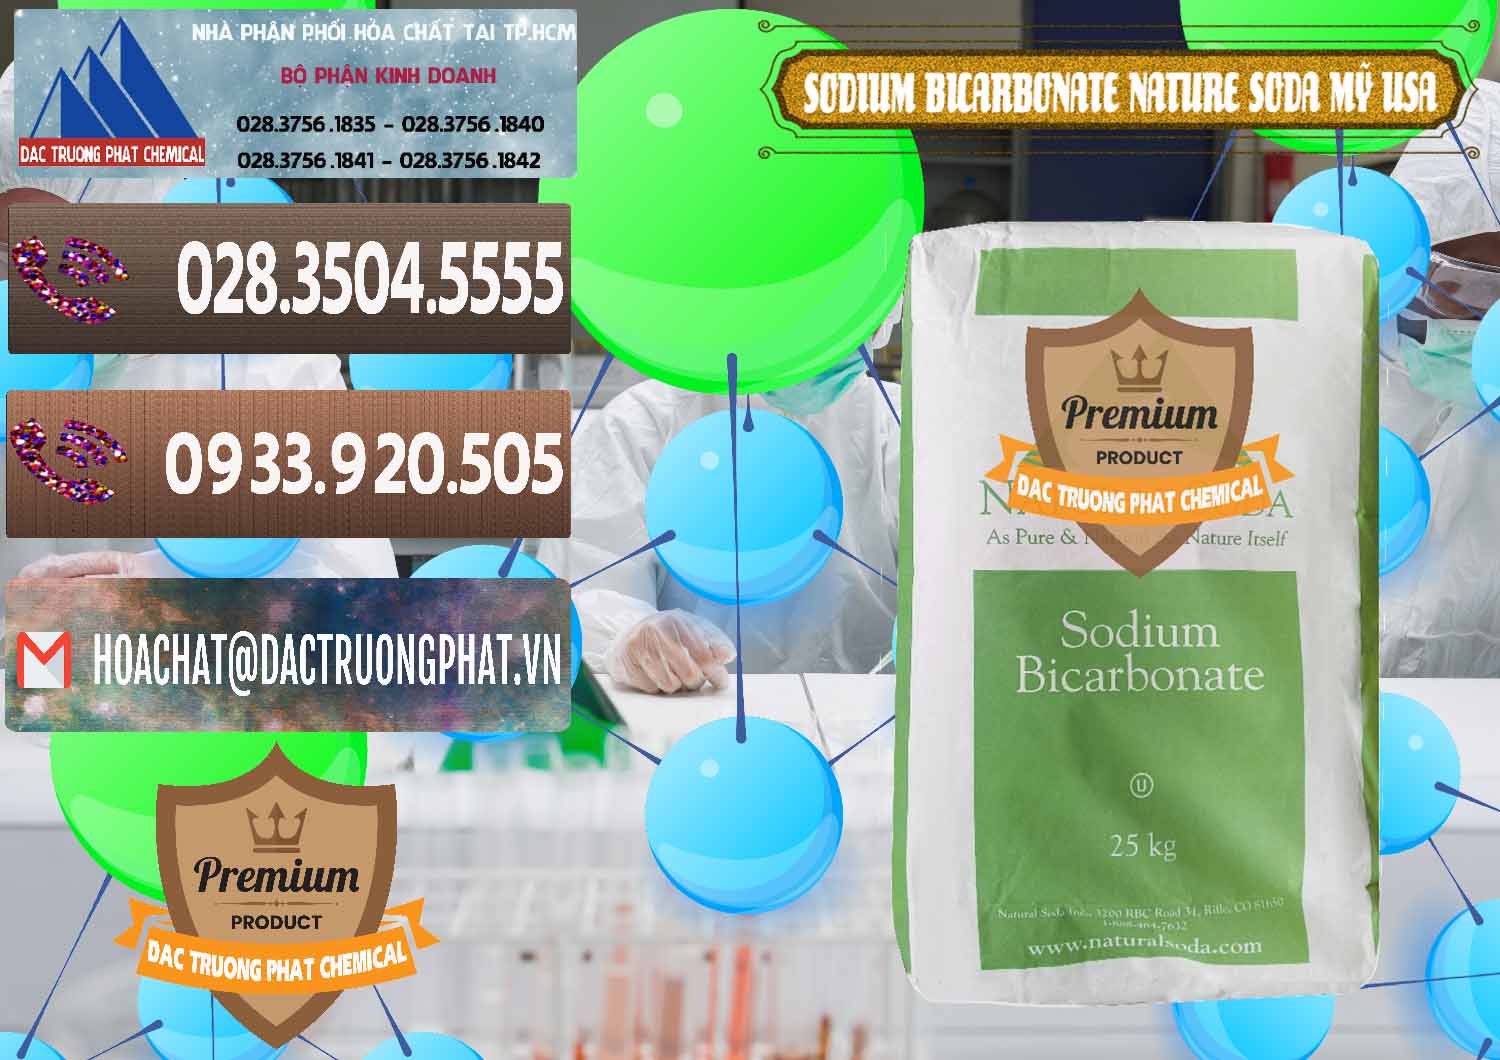 Nơi bán & phân phối Sodium Bicarbonate – Bicar NaHCO3 Food Grade Nature Soda Mỹ USA - 0256 - Nhập khẩu - cung cấp hóa chất tại TP.HCM - hoachatviet.net